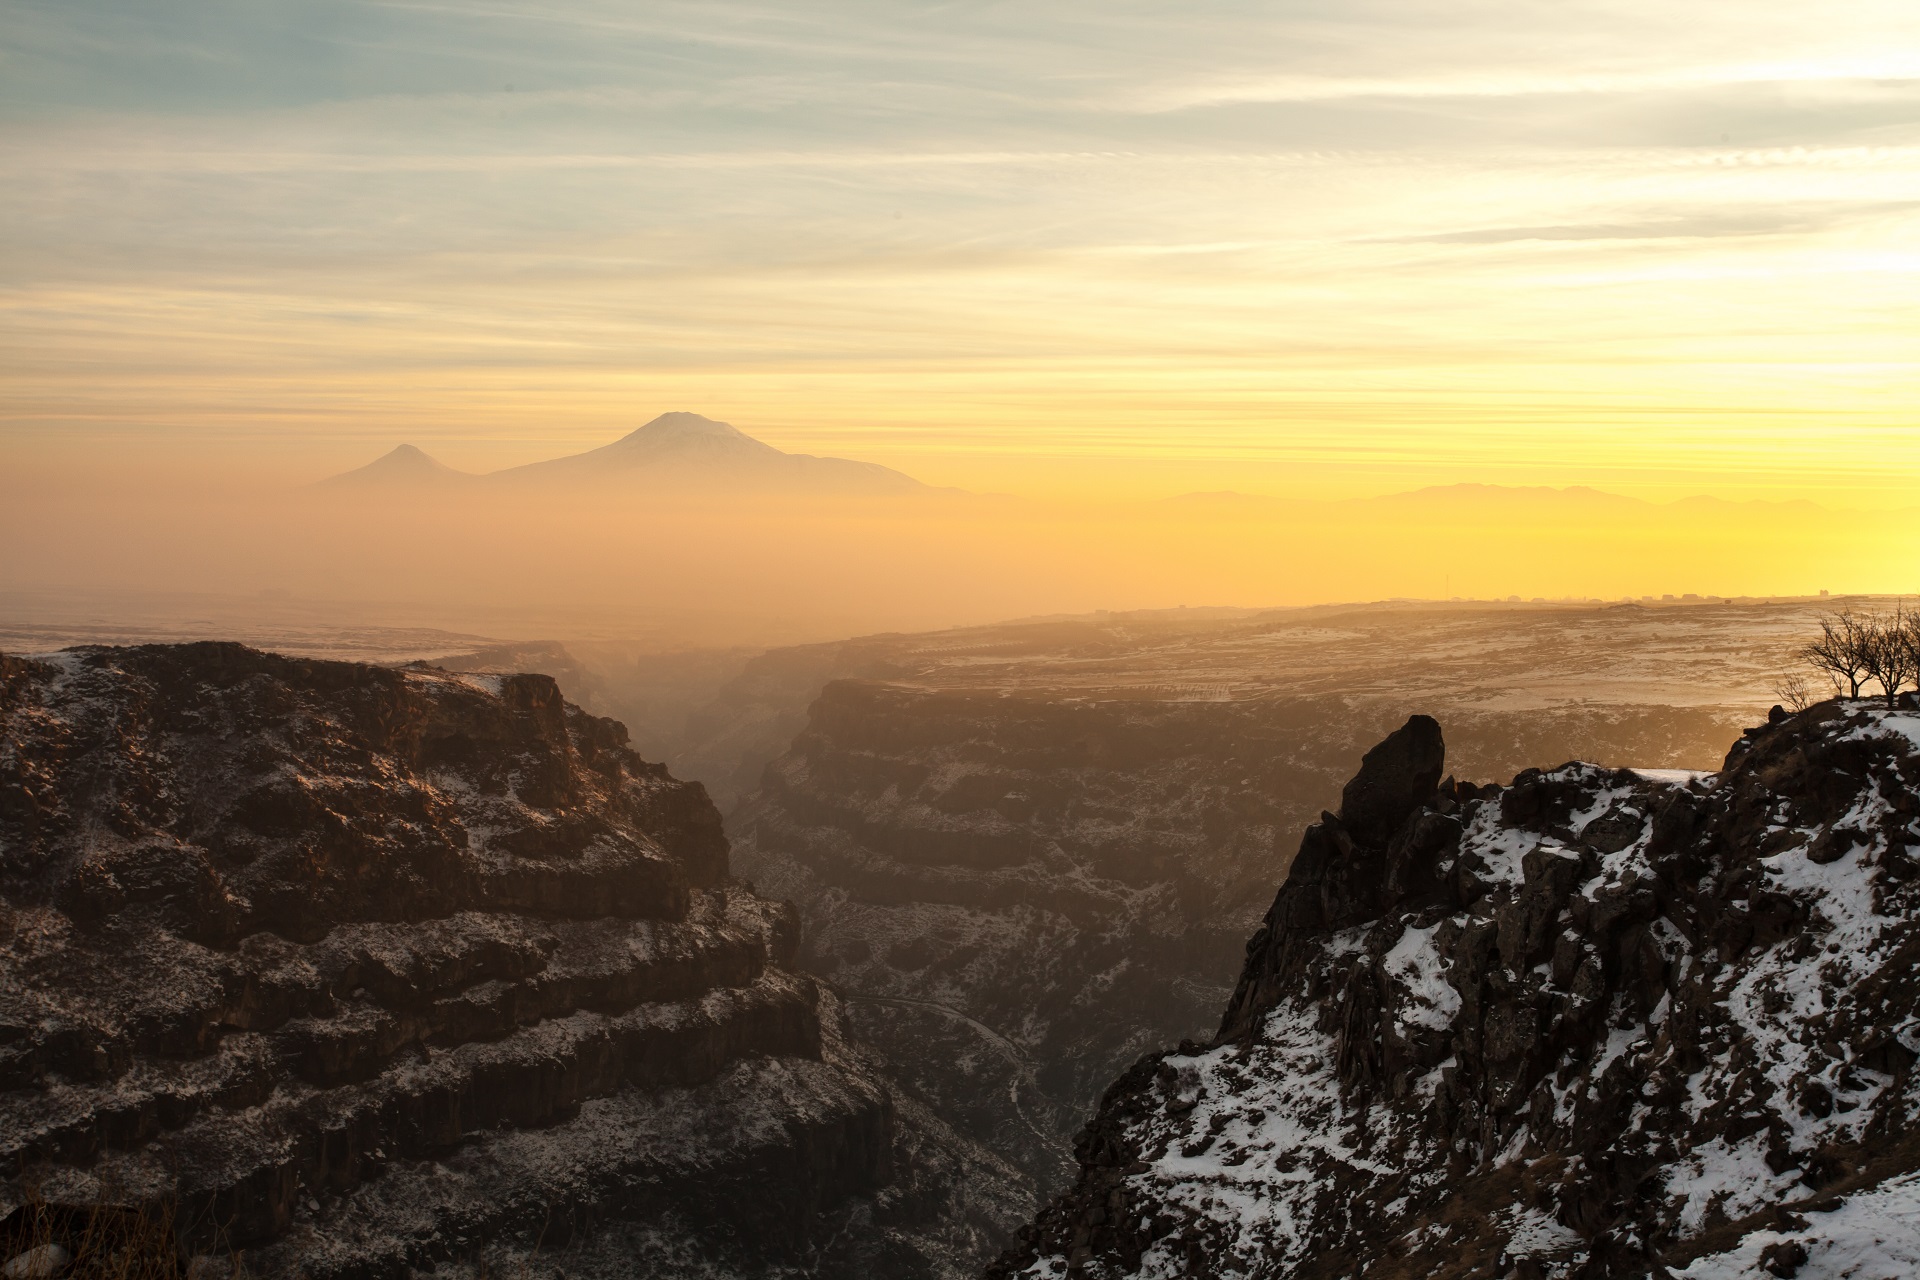 Der Berg Ararat im Dunst der aufgehenden Sonne von Armenien aus betrachtet.